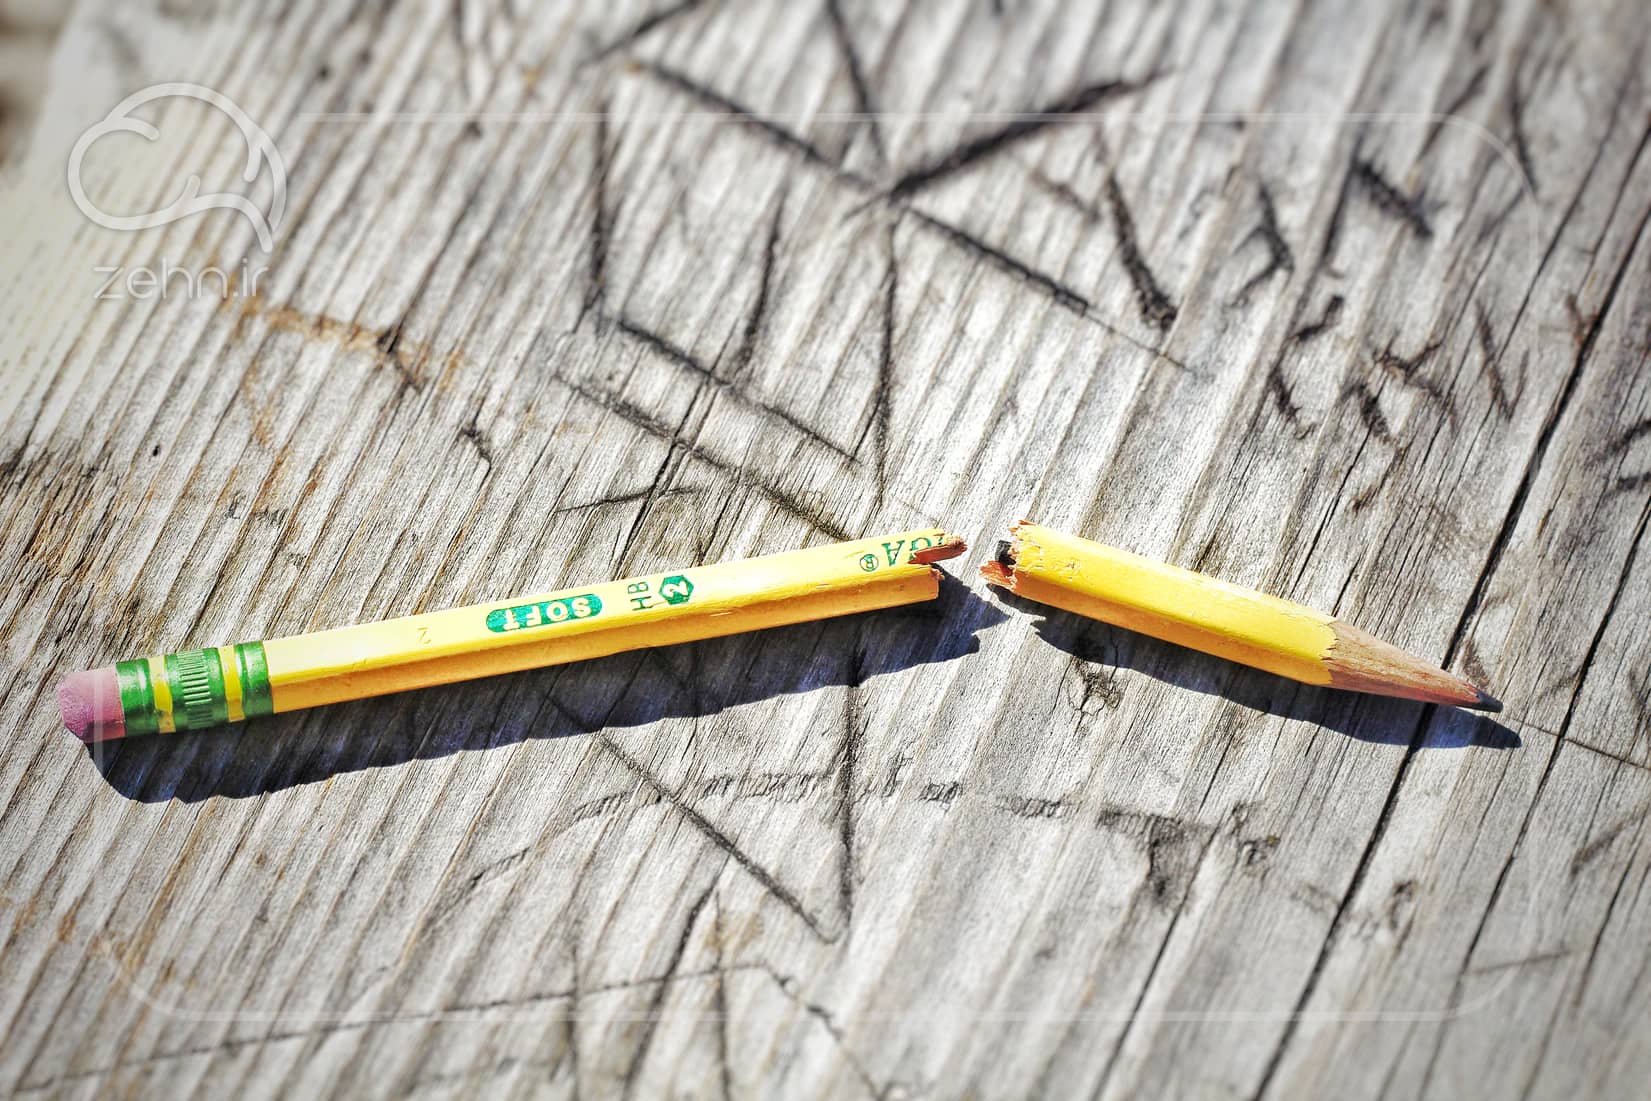 یک مداد شکسته که برای نشان دادن اختلال در انواع یادگیری استفاده می شود.